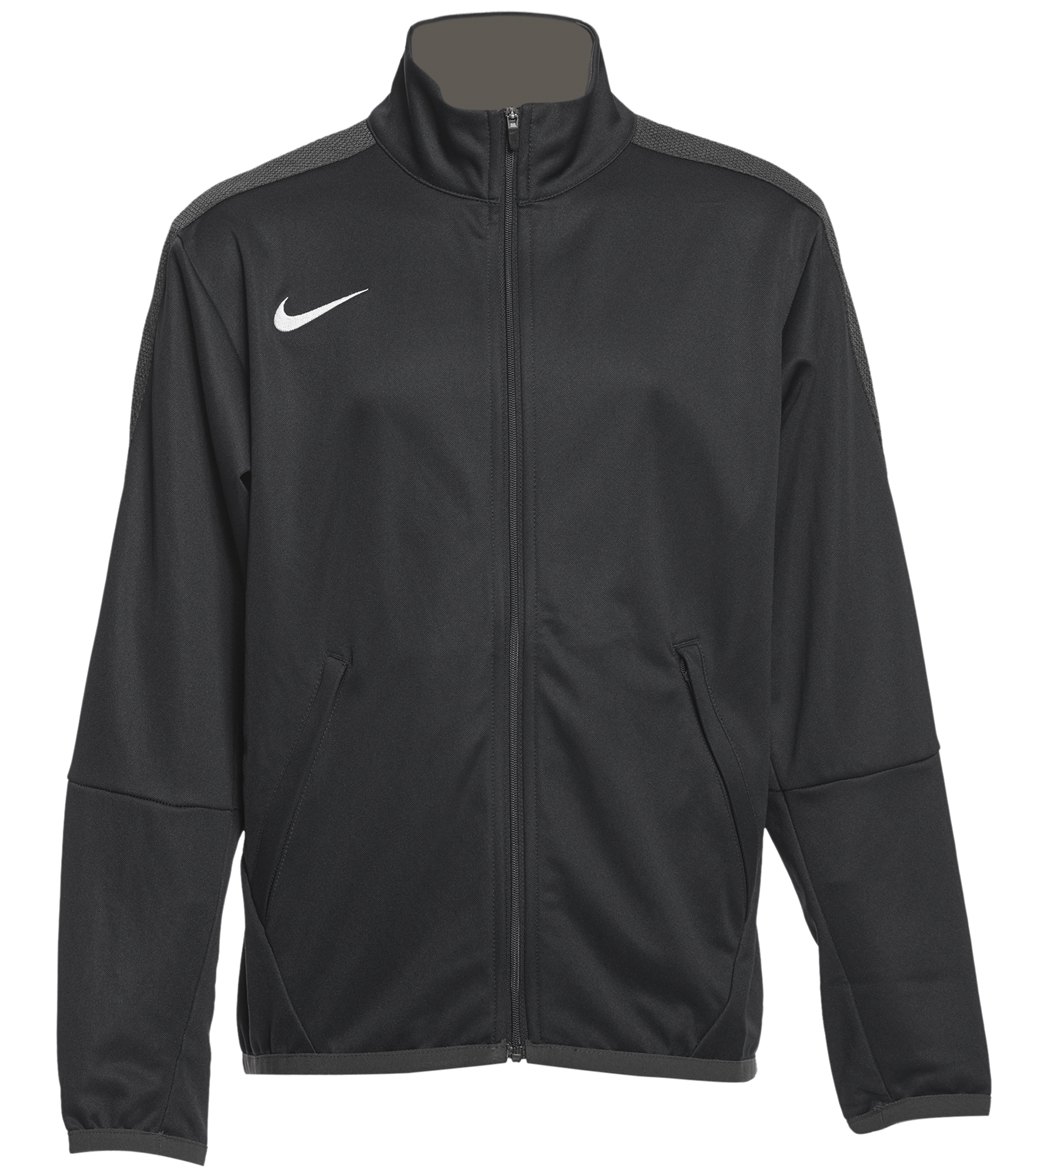 Nike Youth Women's Training Jacket - Black Medium Size Medium Polyester - Swimoutlet.com